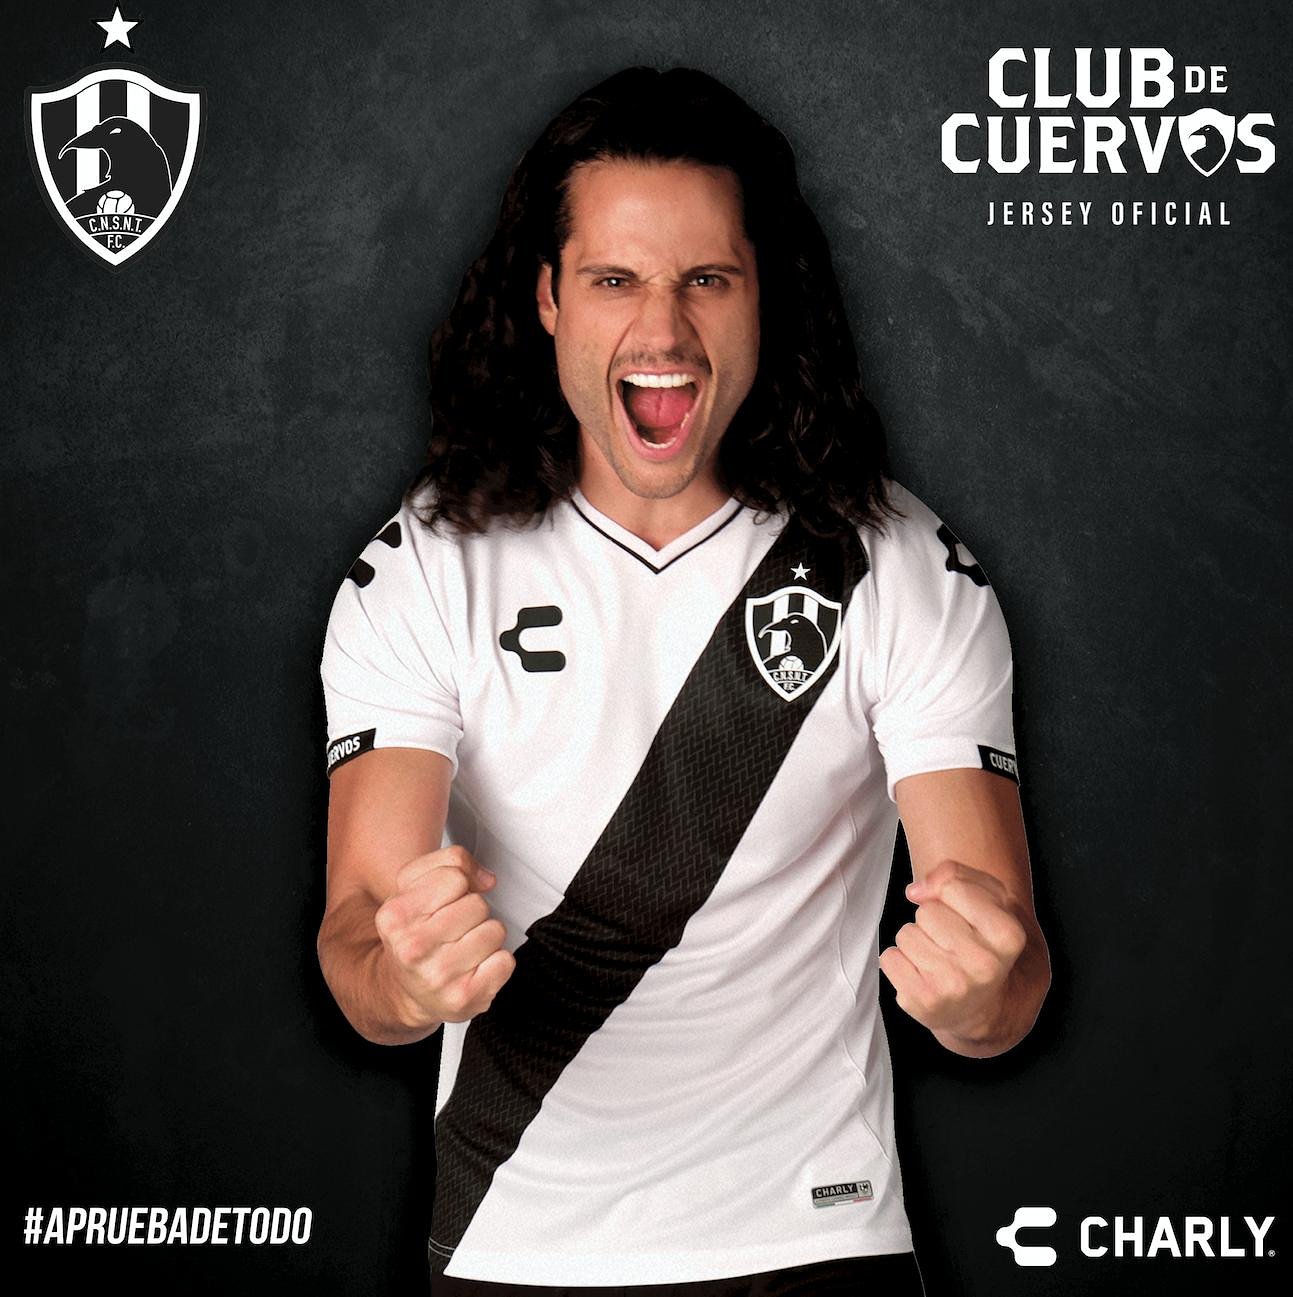 CHARLY Fútbol on Twitter: "¡Porta una como el gran Aitor Cardoné! ⭐ Adquiere el jersey de campeón de Club de Cuervos en 📲 https://t.co/4c9dhdcCfC #CuervosCampeones 🏆 https://t.co/IPfRXlr6em" / Twitter